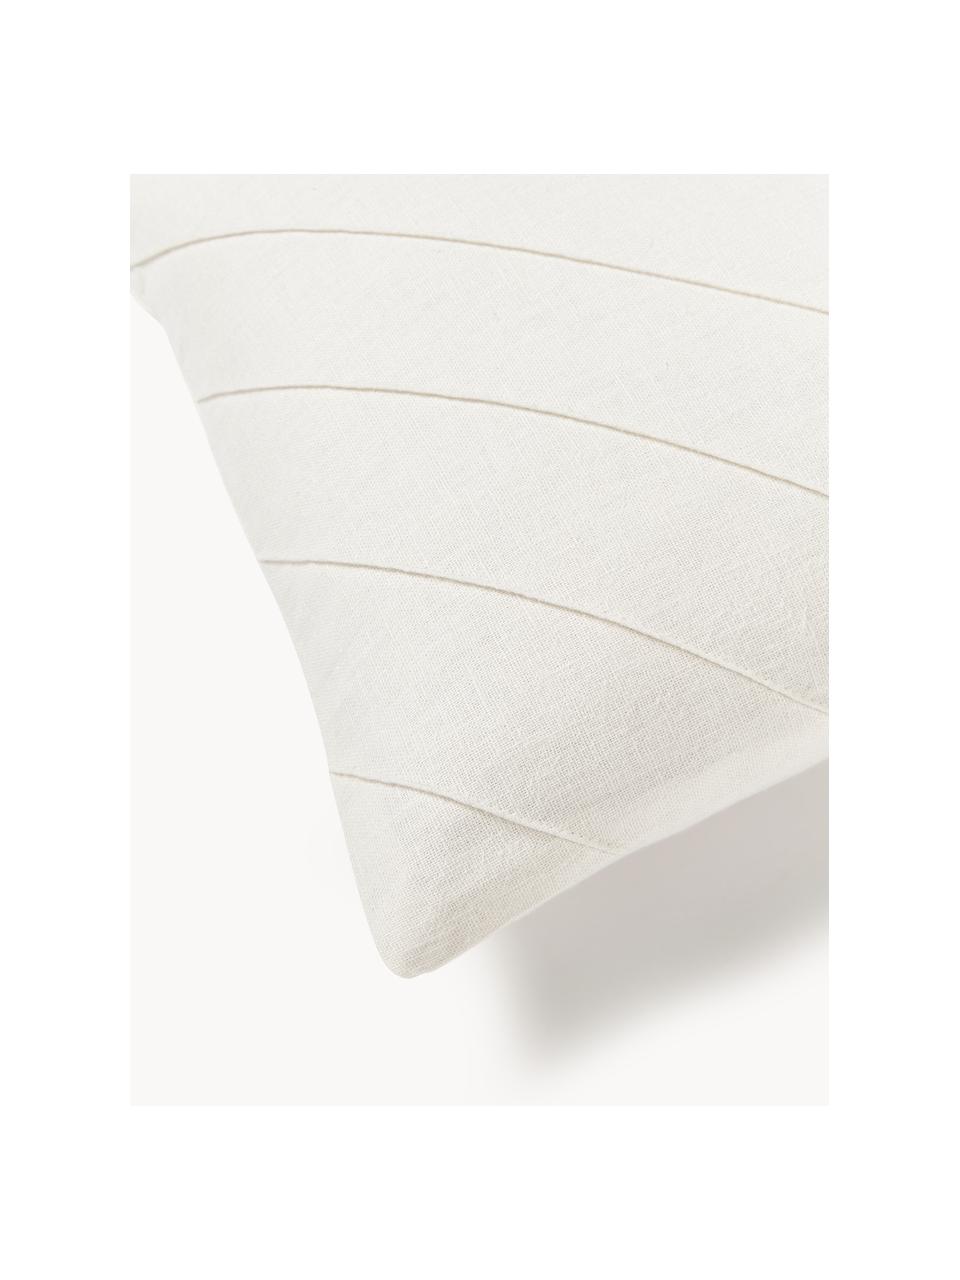 Kussenhoes Malia in wit met structuurpatroon, 51% linnen, 49% katoen, Wit, B 45 x L 45 cm